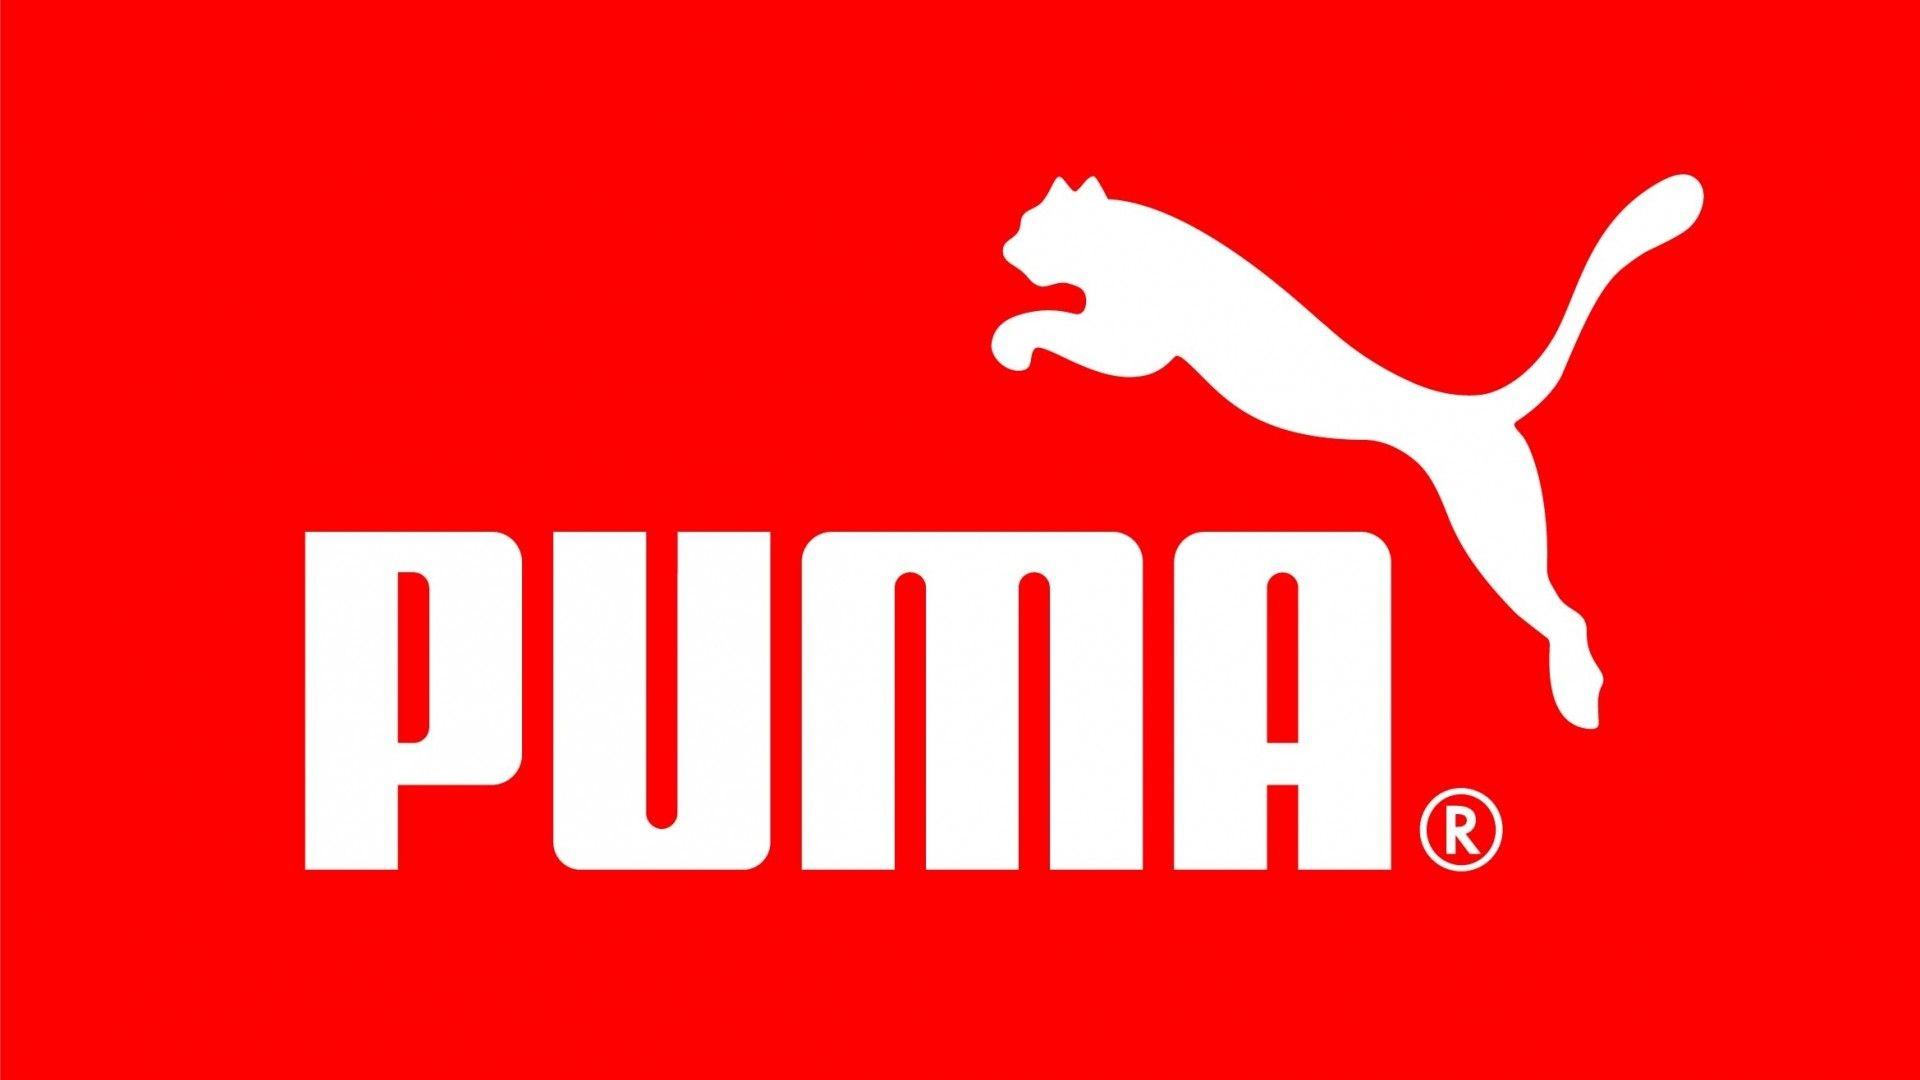 Puma Wallpaper 16477 1920x1080 px